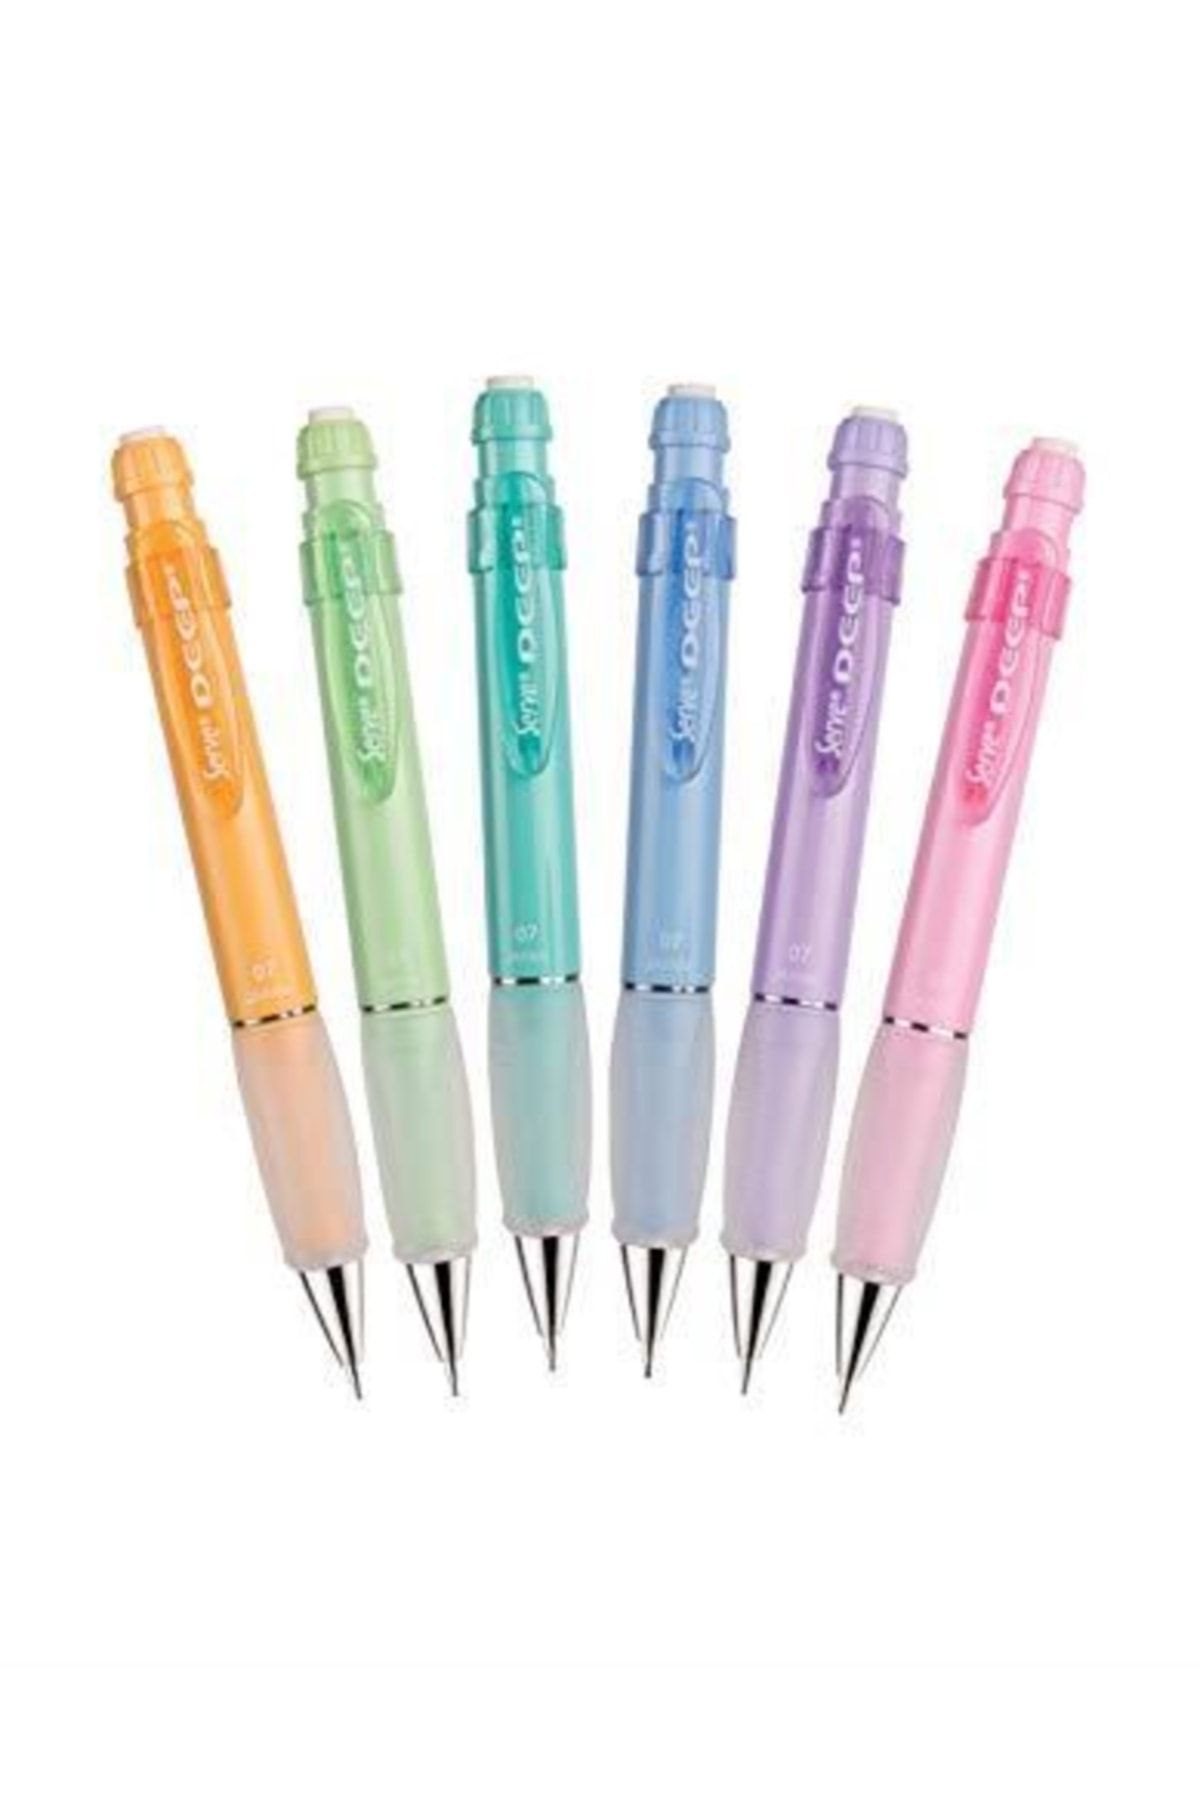 Serve Marka: Deep M.kursun Kalem Pastel 6 Li Pet Kategori: Kurşun Kalemler